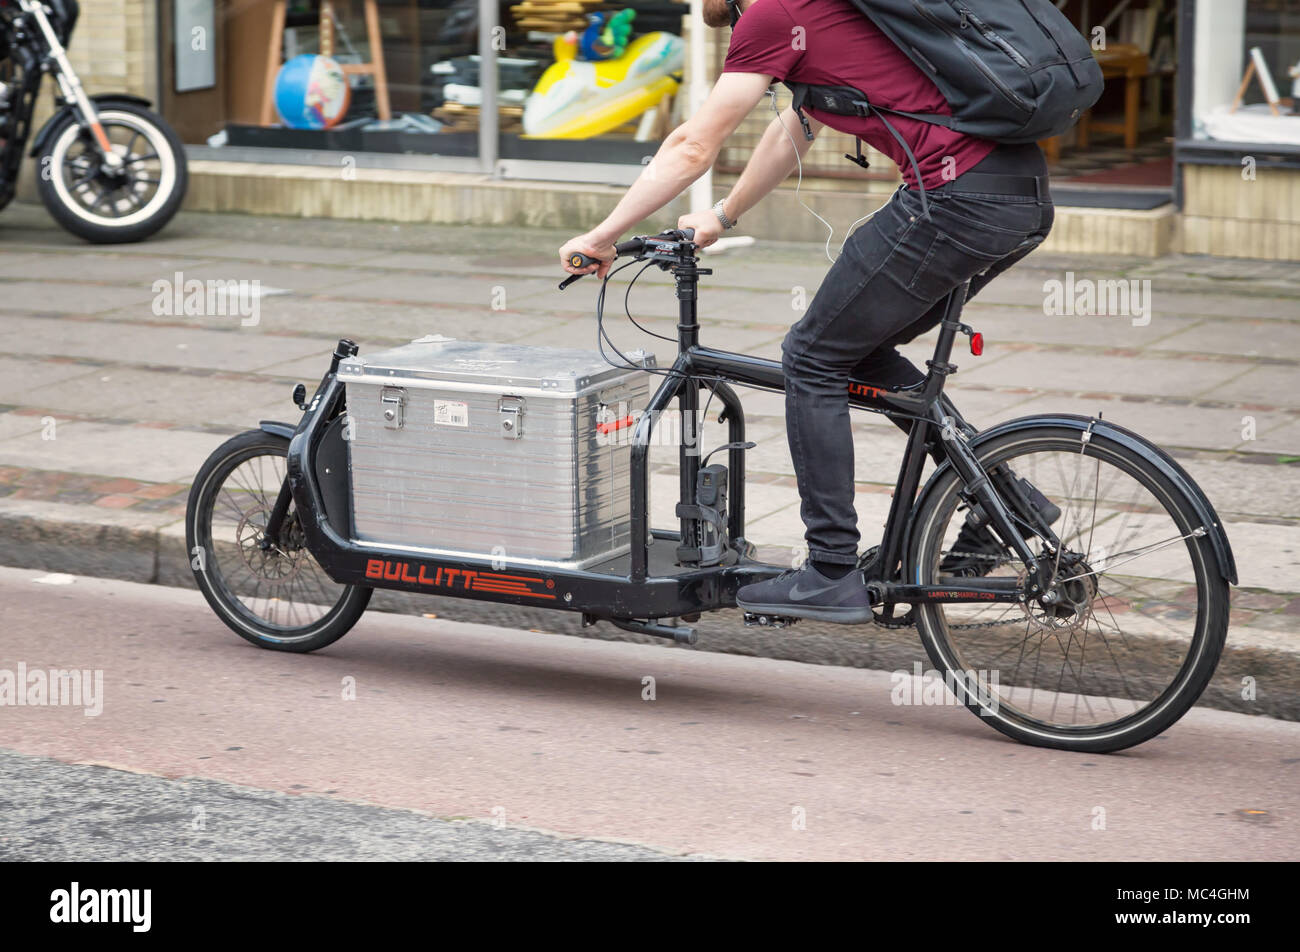 Vélo cargo Bullitt à Copenhague Banque D'Images